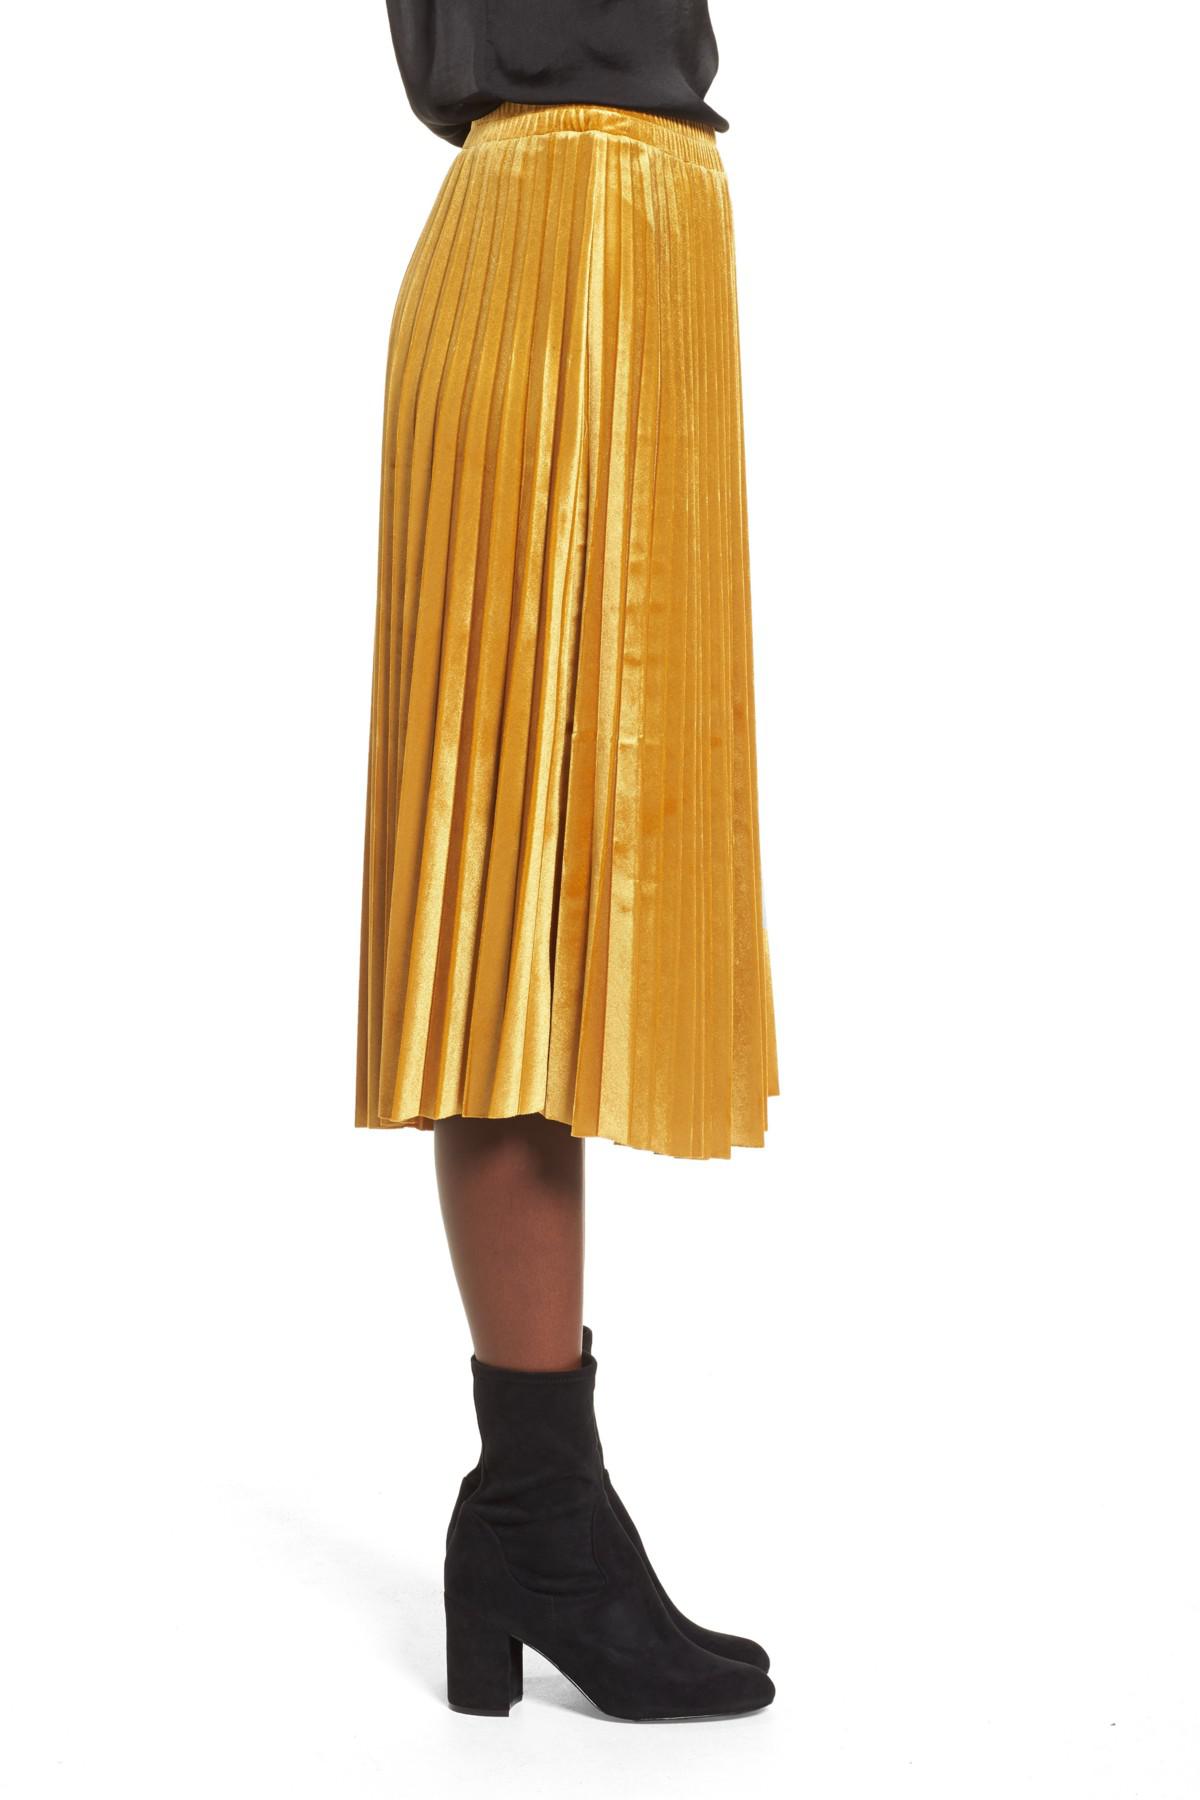 Lyst - Chelsea28 Pleated Velvet Skirt in Yellow